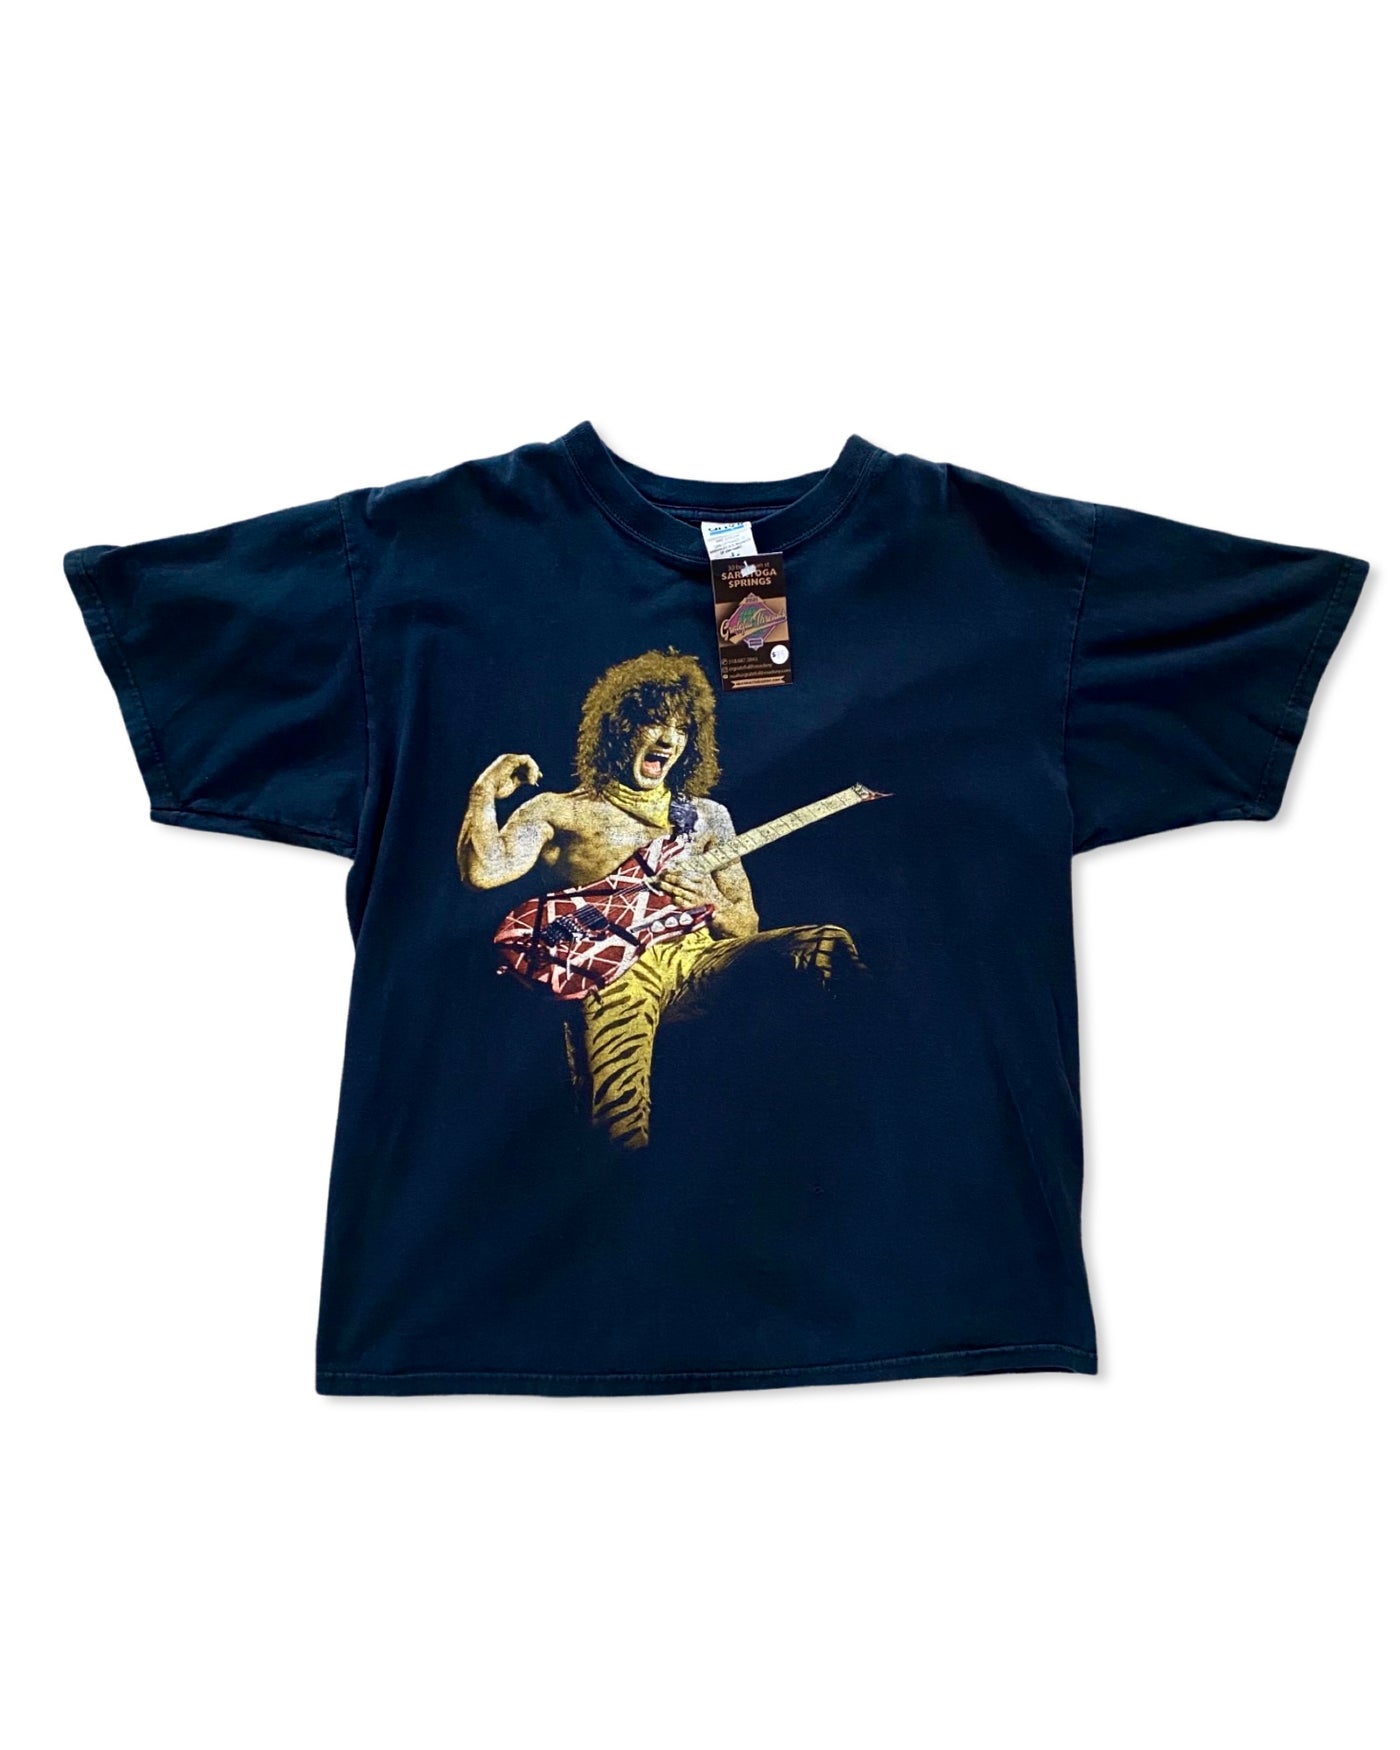 Vintage Van Halen T-Shirt